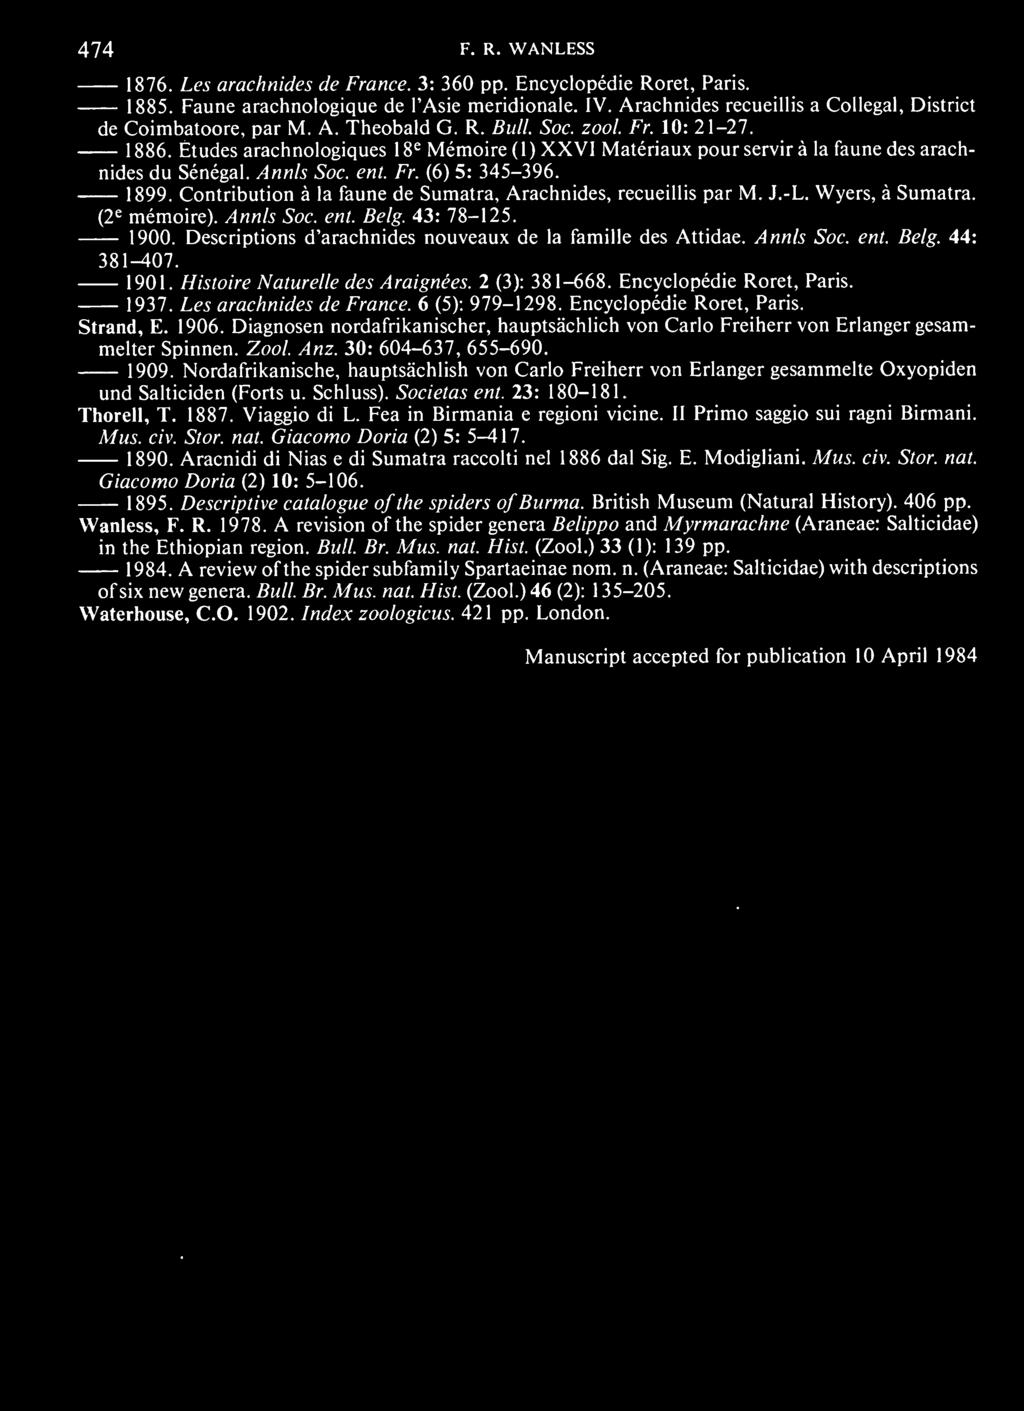 Etudes arachnologiques 8 e Memoire 1 ( 1 ) XXVI Materiaux pour servir a la faune des arachnides du Senegal. Annls Soc. ent. Fr. (6) 5: 345-396. 1899.